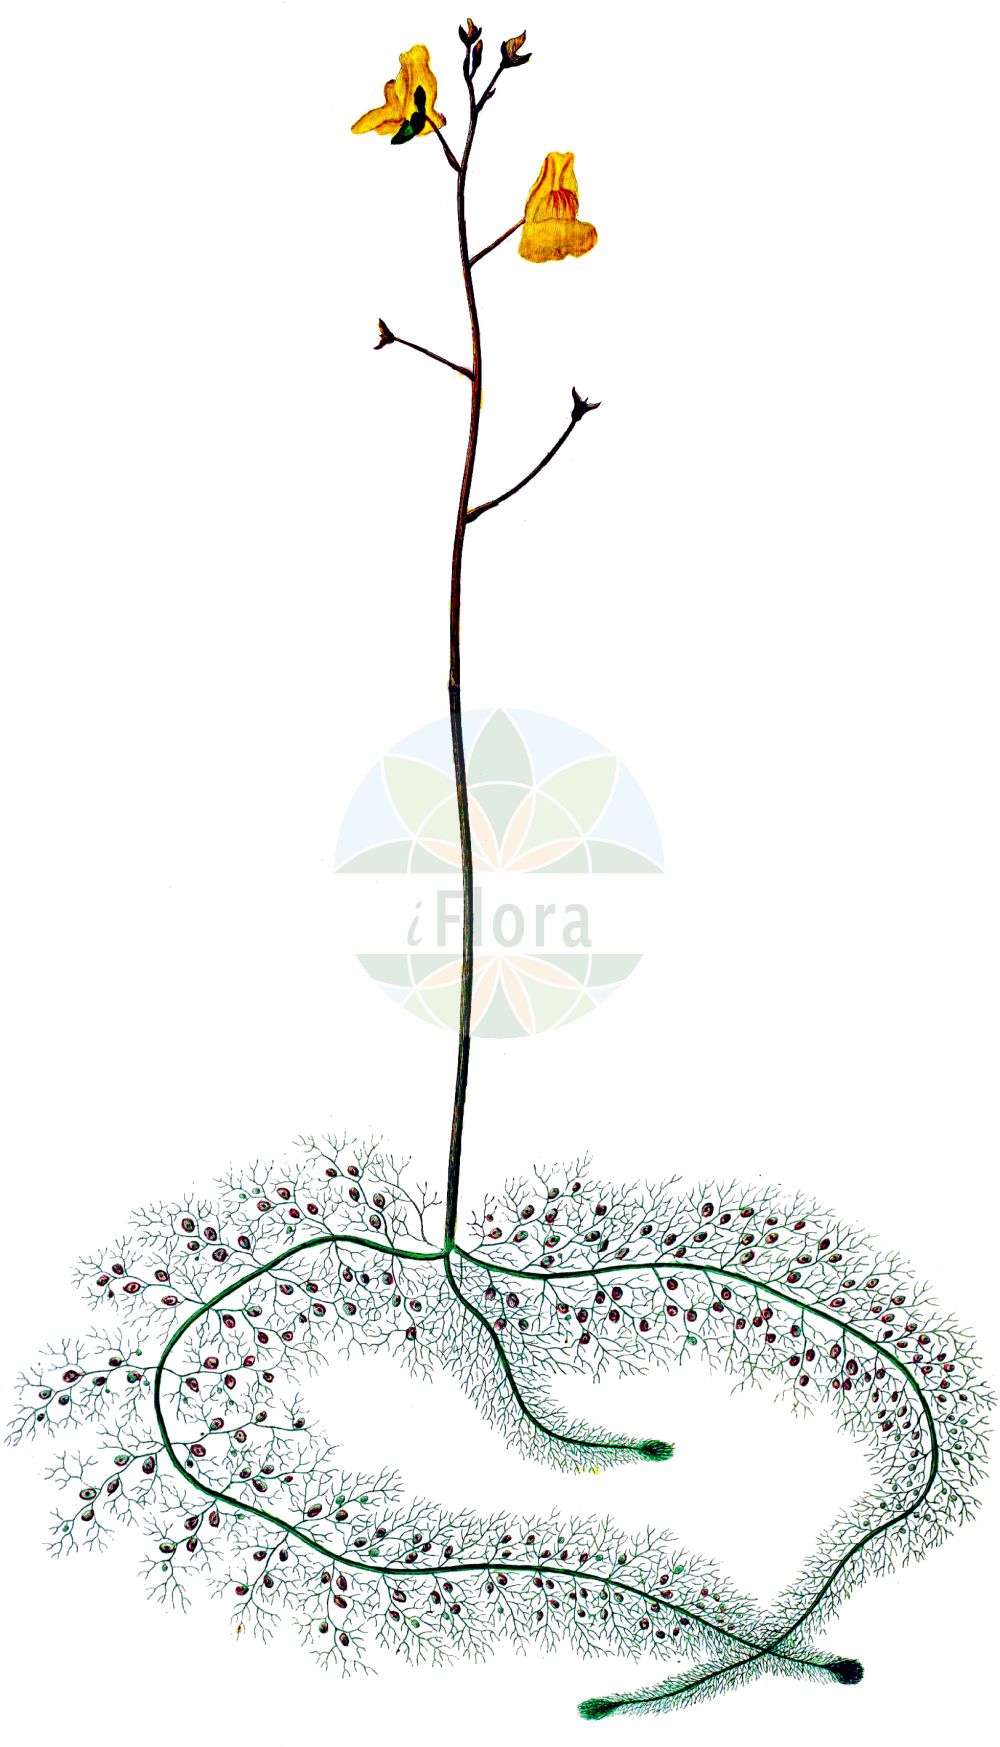 Historische Abbildung von Utricularia australis (Verkannter Wasserschlauch - Bladderwort). Das Bild zeigt Blatt, Bluete, Frucht und Same. ---- Historical Drawing of Utricularia australis (Verkannter Wasserschlauch - Bladderwort). The image is showing leaf, flower, fruit and seed.(Utricularia australis,Verkannter Wasserschlauch,Bladderwort,Utricularia australis,Utricularia dubia,Utricularia jankae,Utricularia neglecta,Verkannter Wasserschlauch,Suedlicher Wasserschlauch,Übersehener Wasserschlauch,Bladderwort,Western Bladderwort,Utricularia,Wasserschlauch,Bladderwort,Lentibulariaceae,Wasserschlauchgewächse,Bladderwort family,Blatt,Bluete,Frucht,Same,leaf,flower,fruit,seed,Oeder (1761-1883))